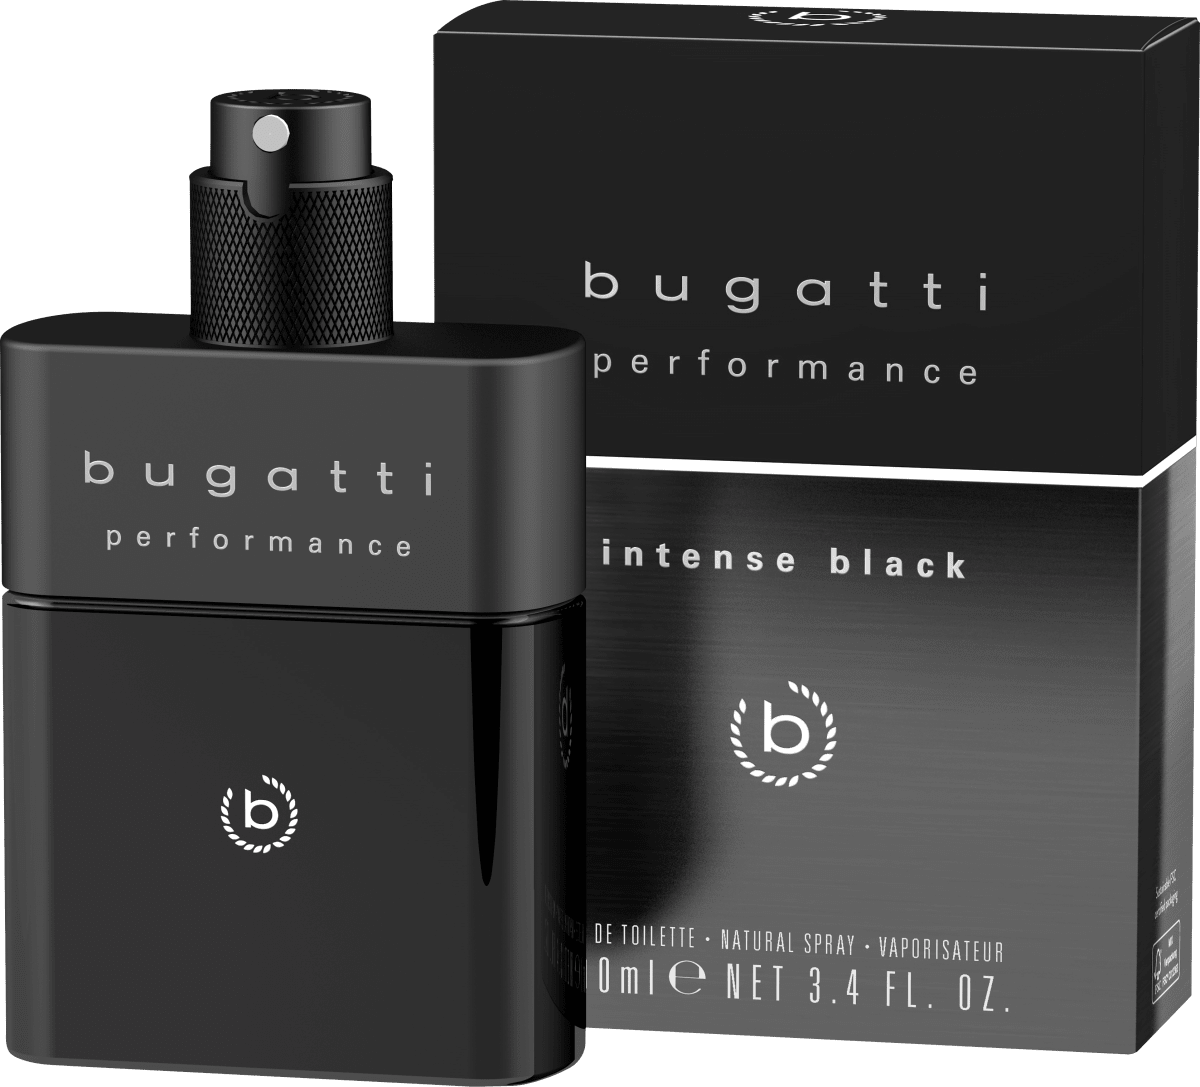 bugatti Performance günstig ml 100 Eau Toilette, de dauerhaft Black kaufen Intense online